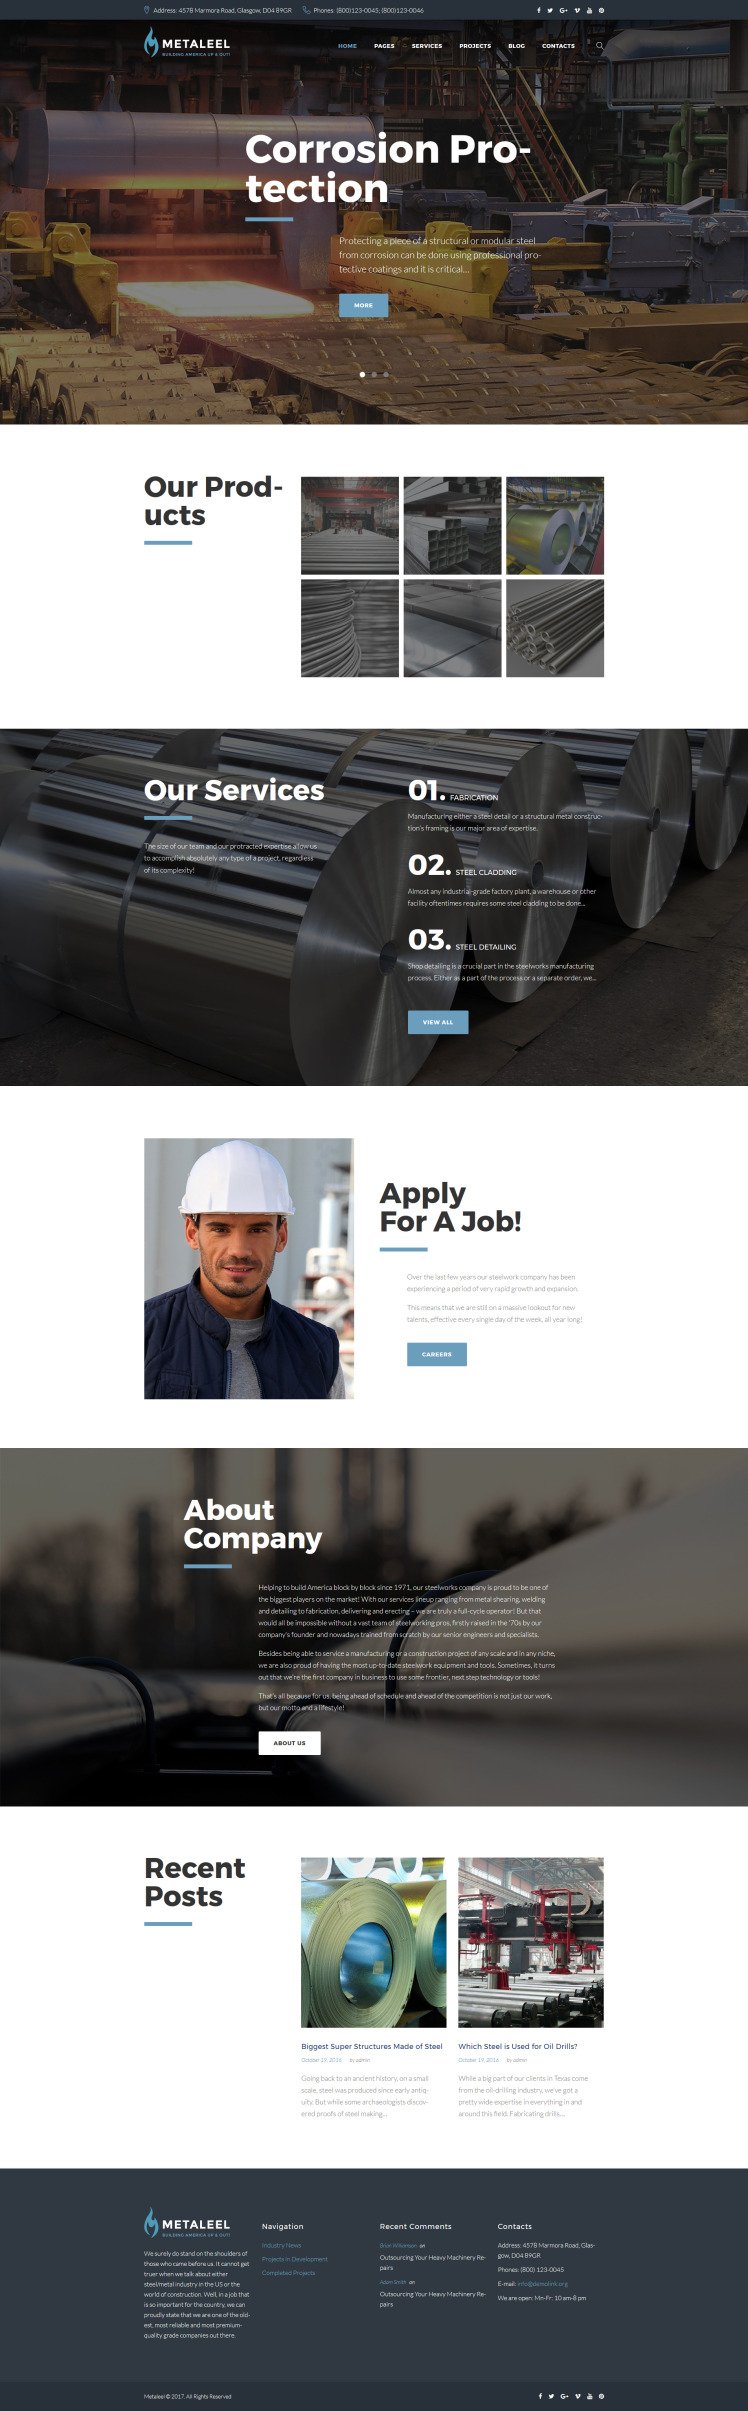 Mataleel Industrial Company Website Template For WordPress